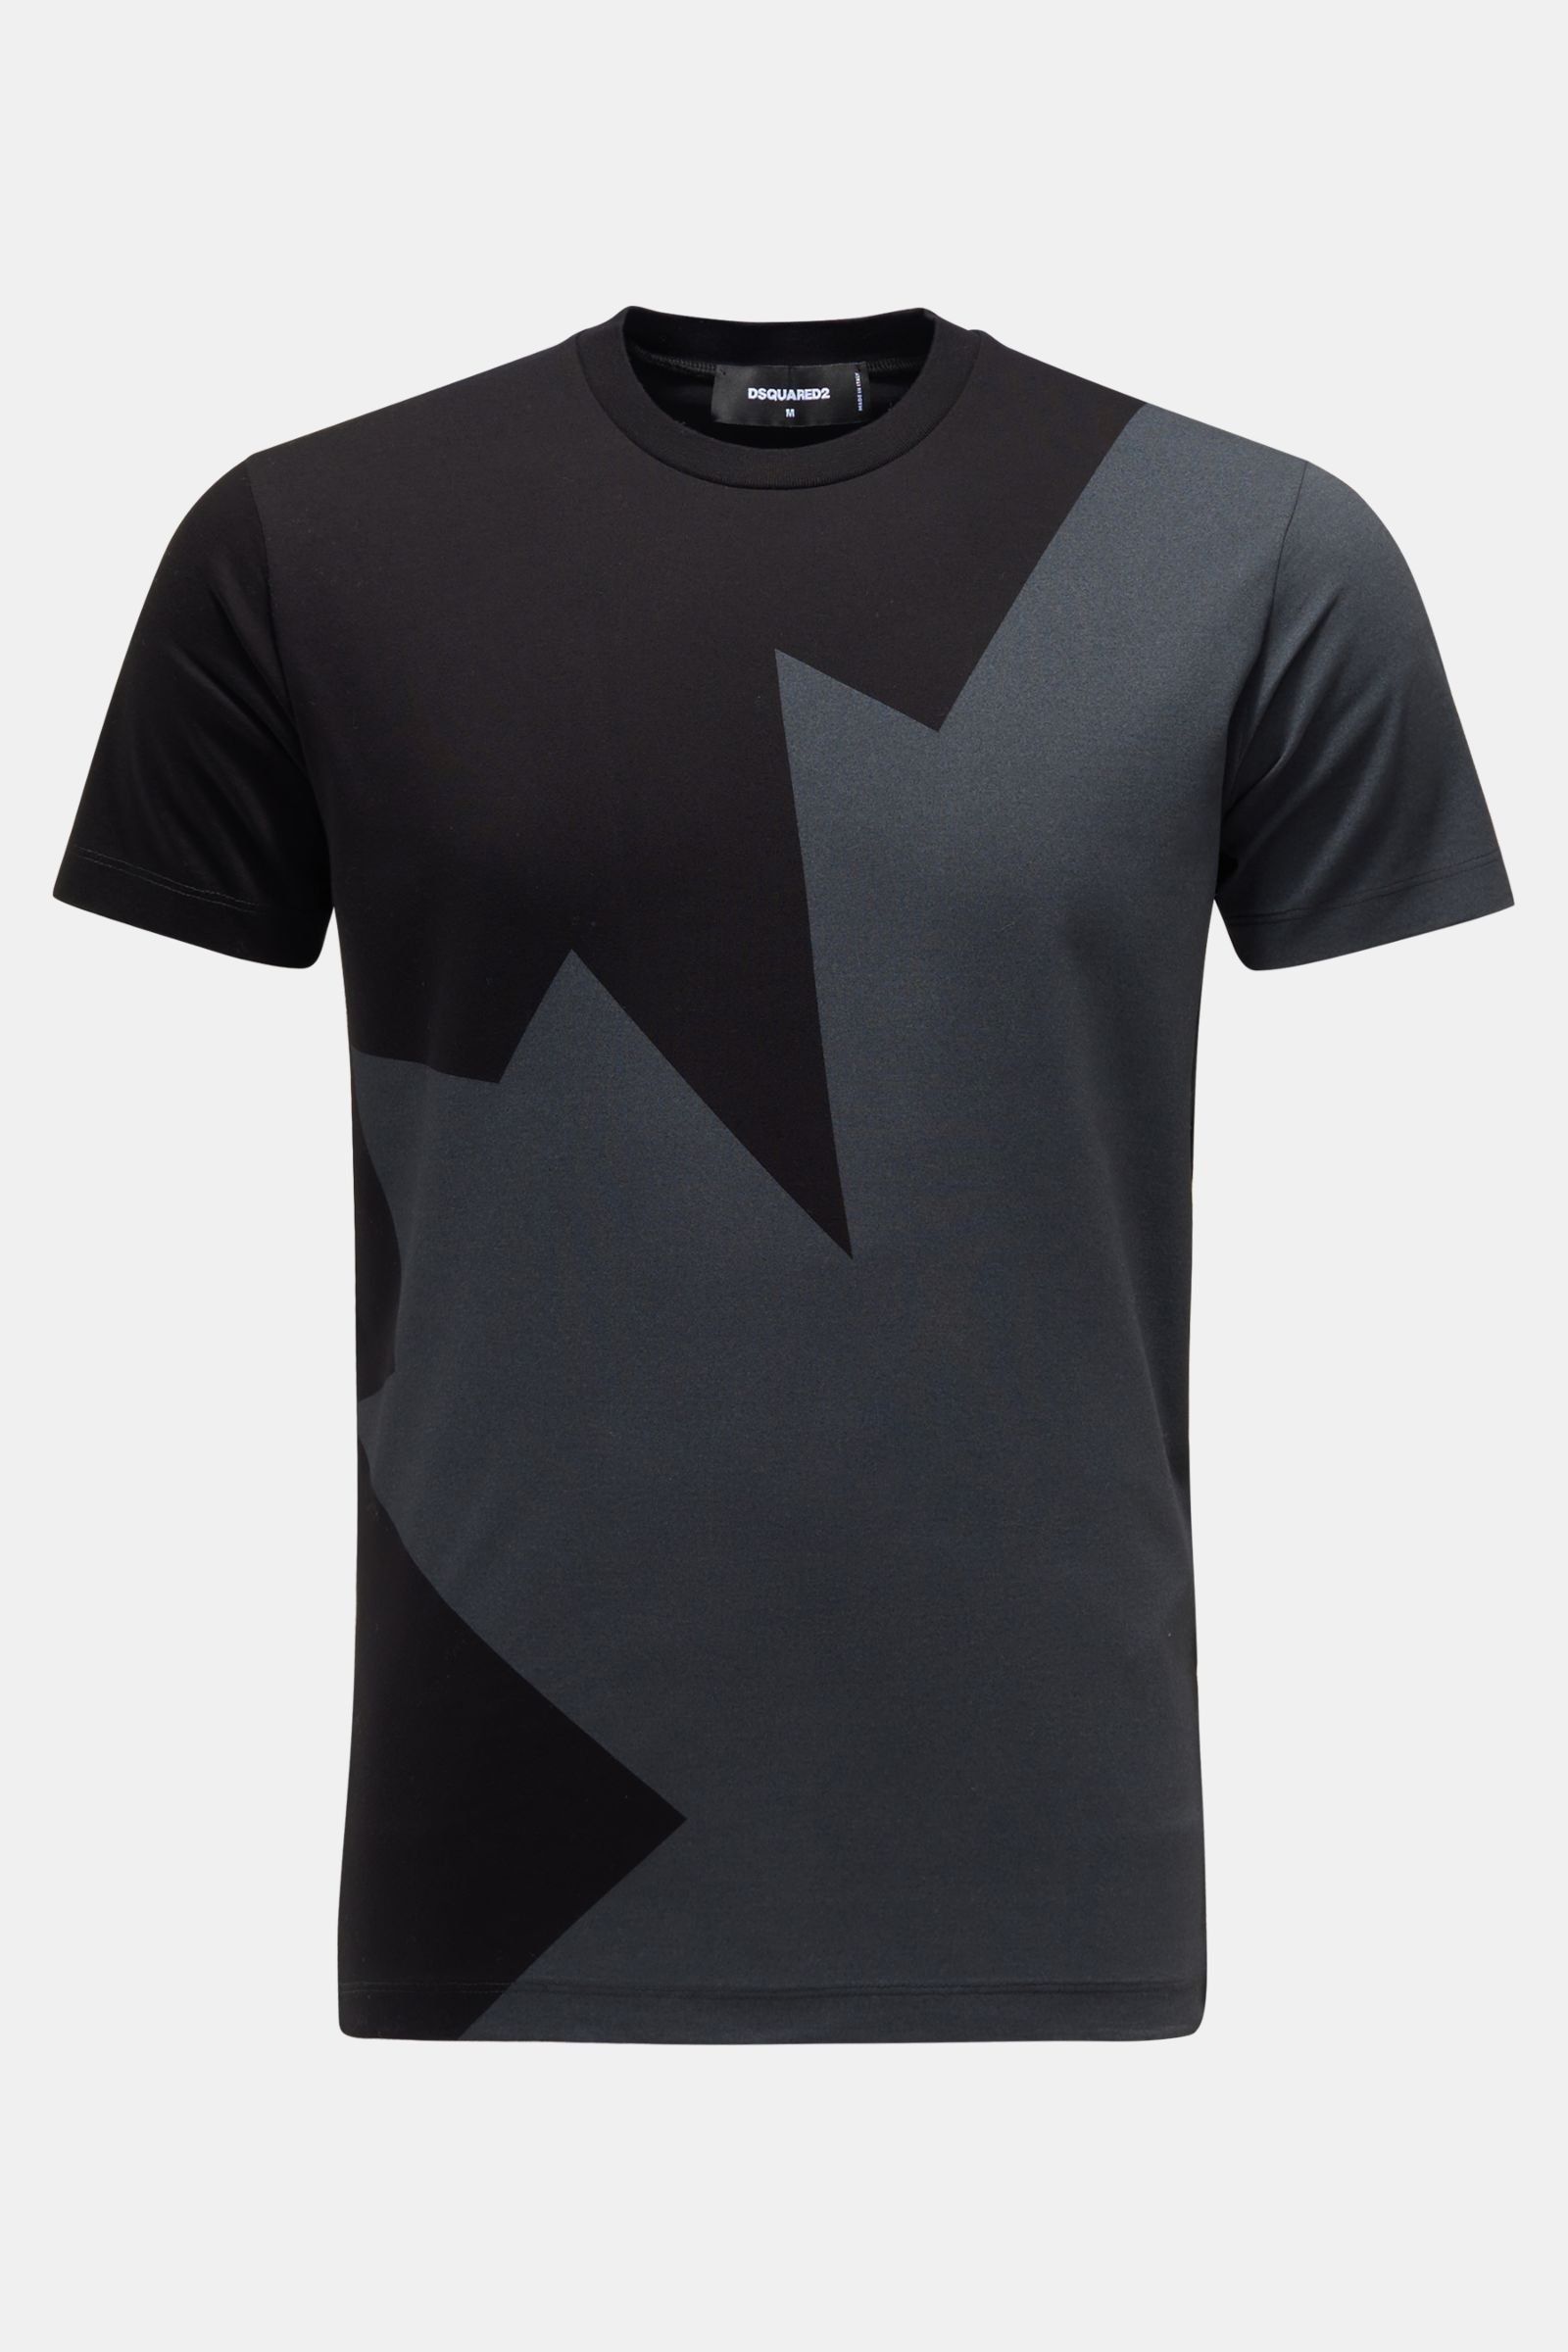 Rundhals-T-Shirt schwarz/dunkelgrau